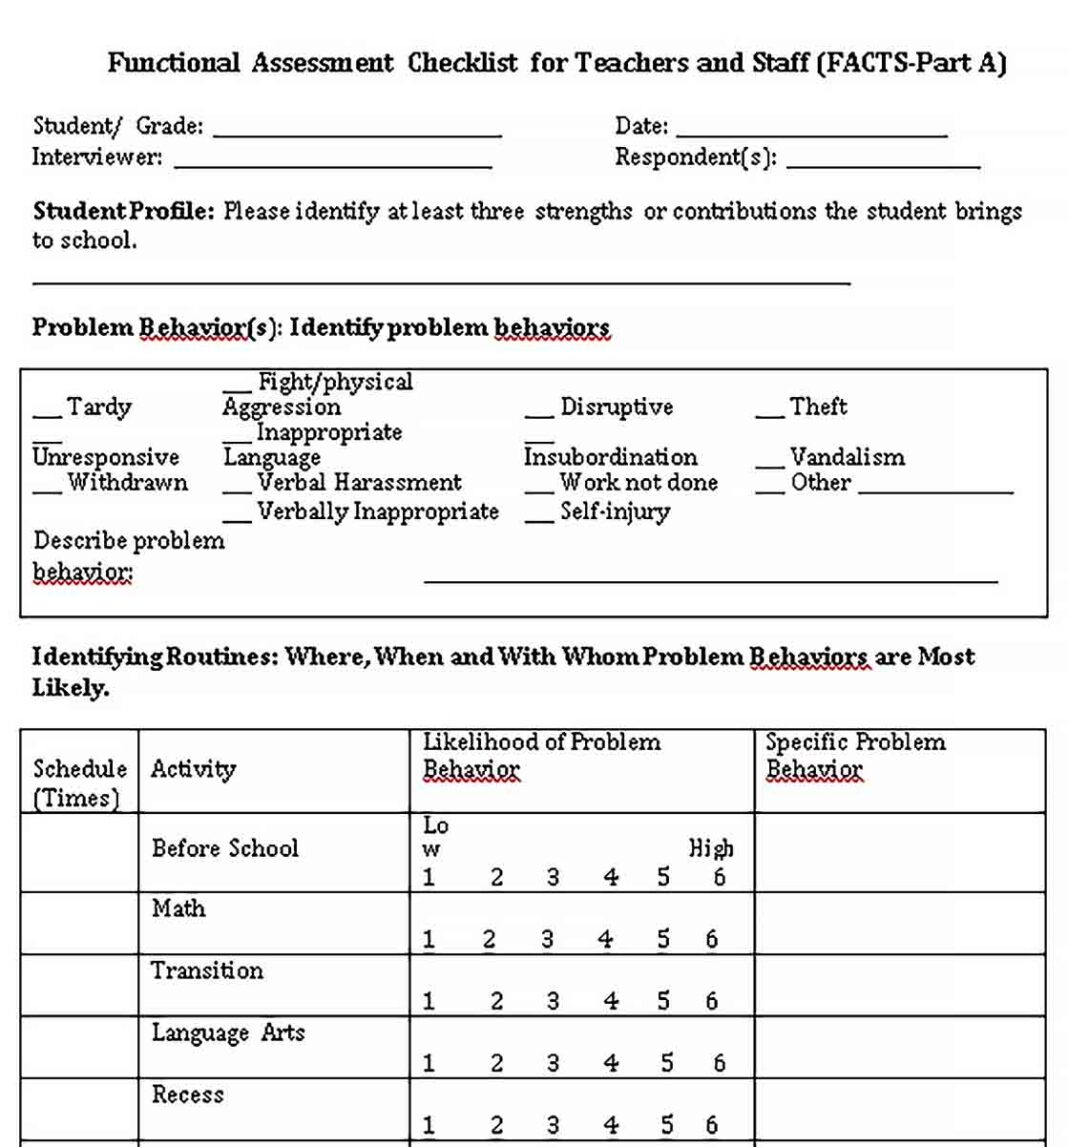 Teacher Checklist Template Bcjournal Org Assessment For Teachers  With Teacher Checklist Template For Assessment Pertaining To Teacher Checklist Template For Assessment